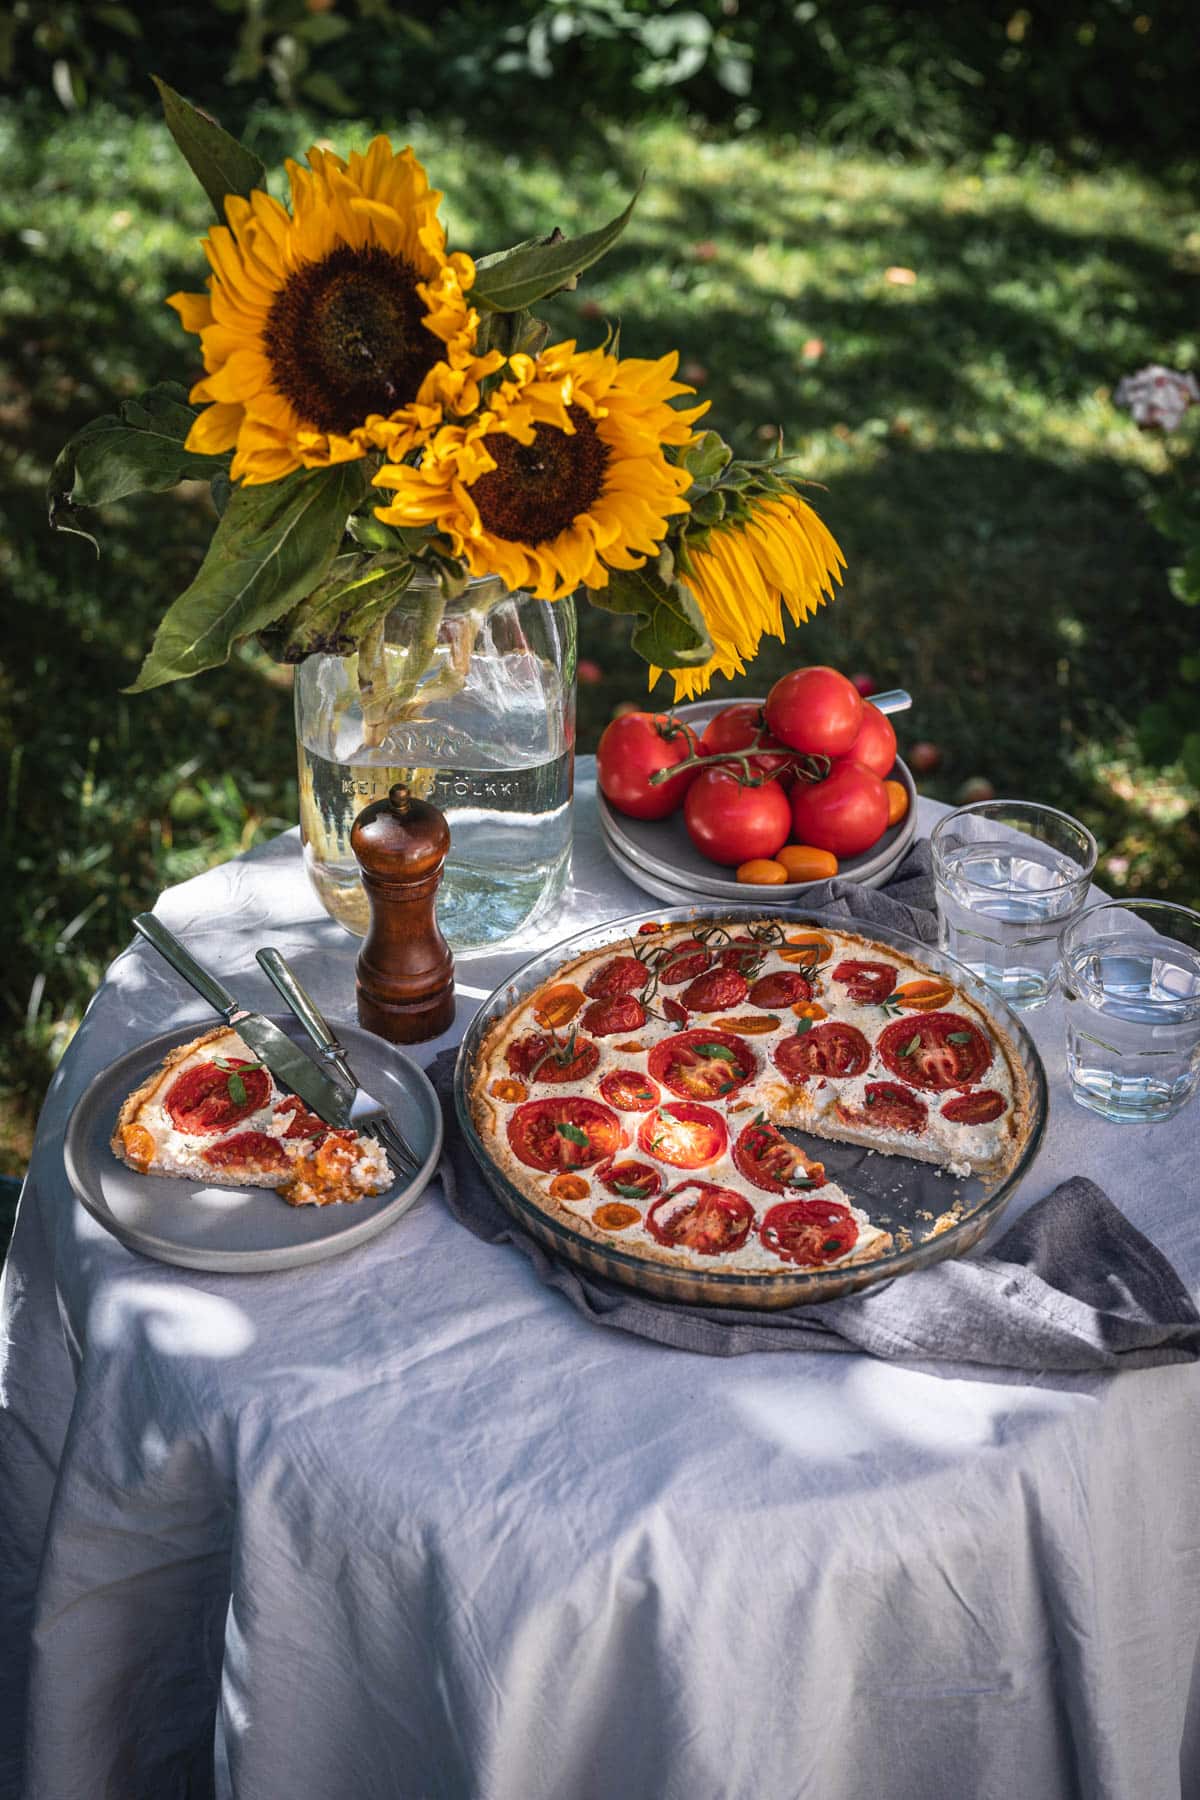 Tomaattipiirakka puutarhapöydällä. Piirakka on pyöreässä piirakkavuoassa ja siitä on leikattu yksi pala harmaalle lautaselle. Pöydällä on myös auringonkukkia maljakossa sekä tuoreita tomaatteja lautasella.